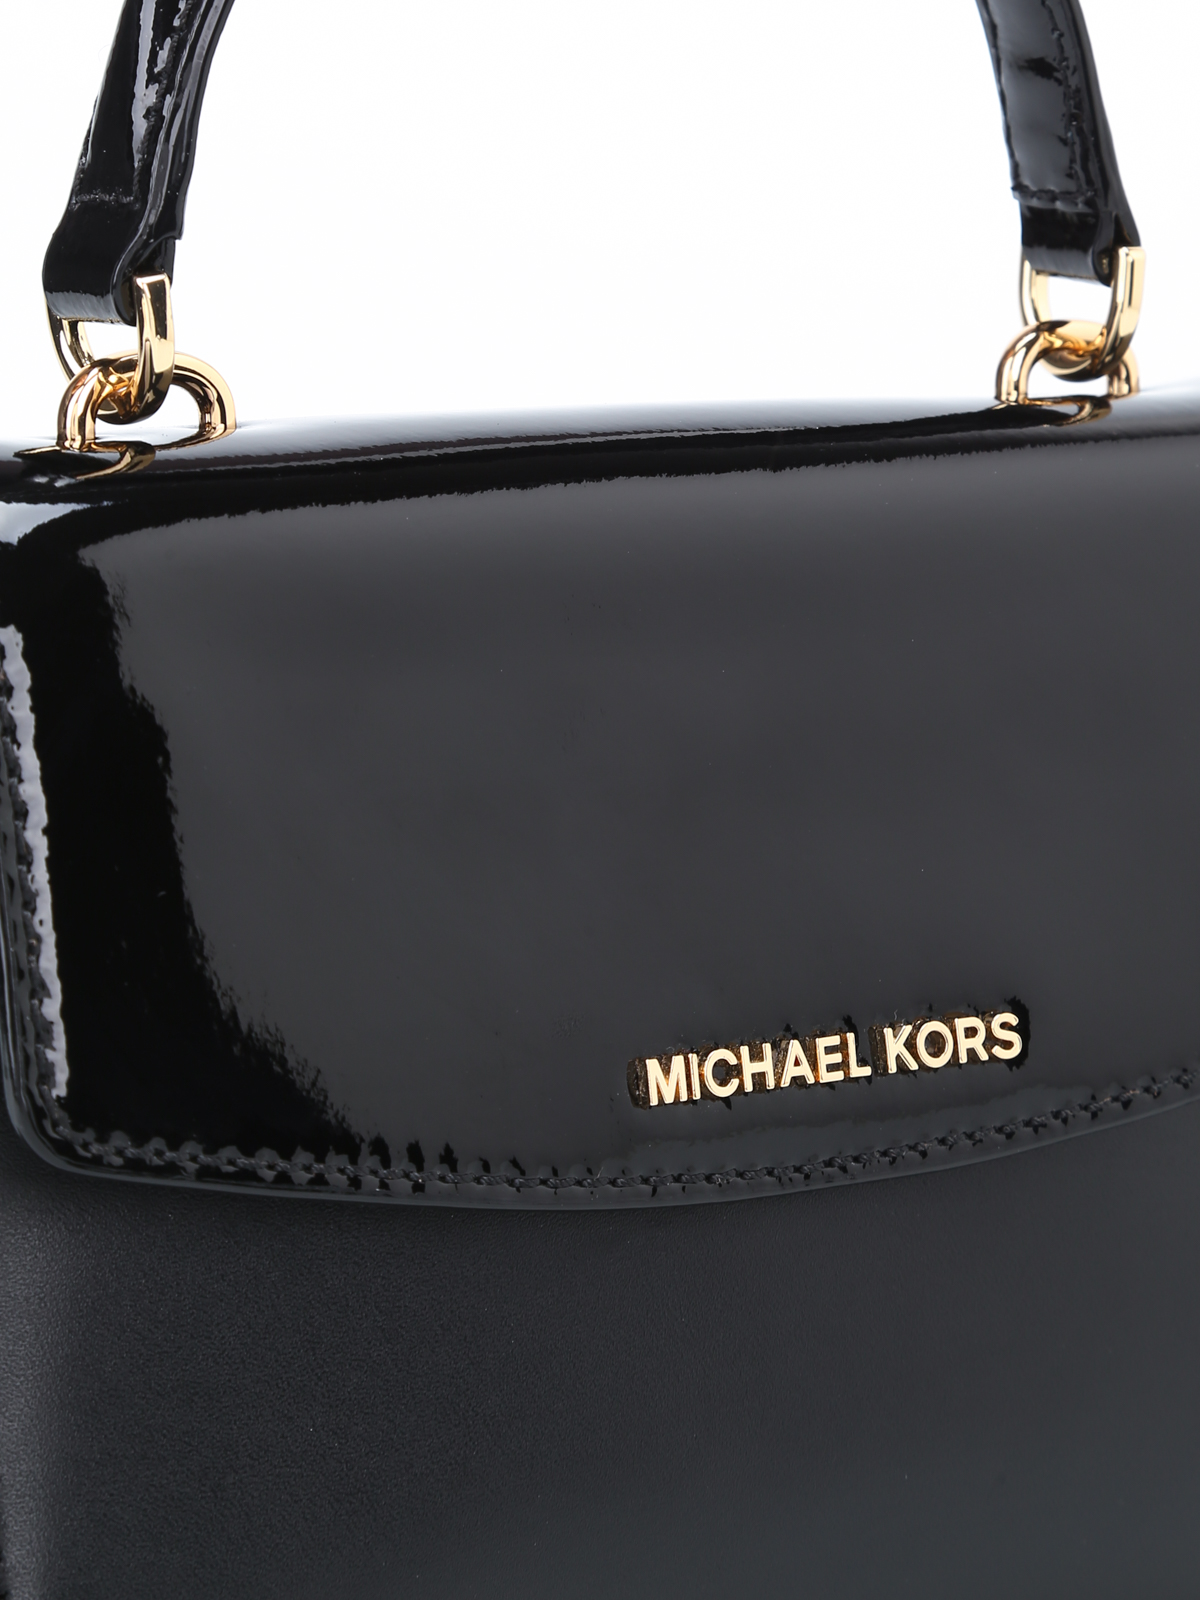 Michael Kors Silver Leather Small Ava Top Handle Bag Michael Kors